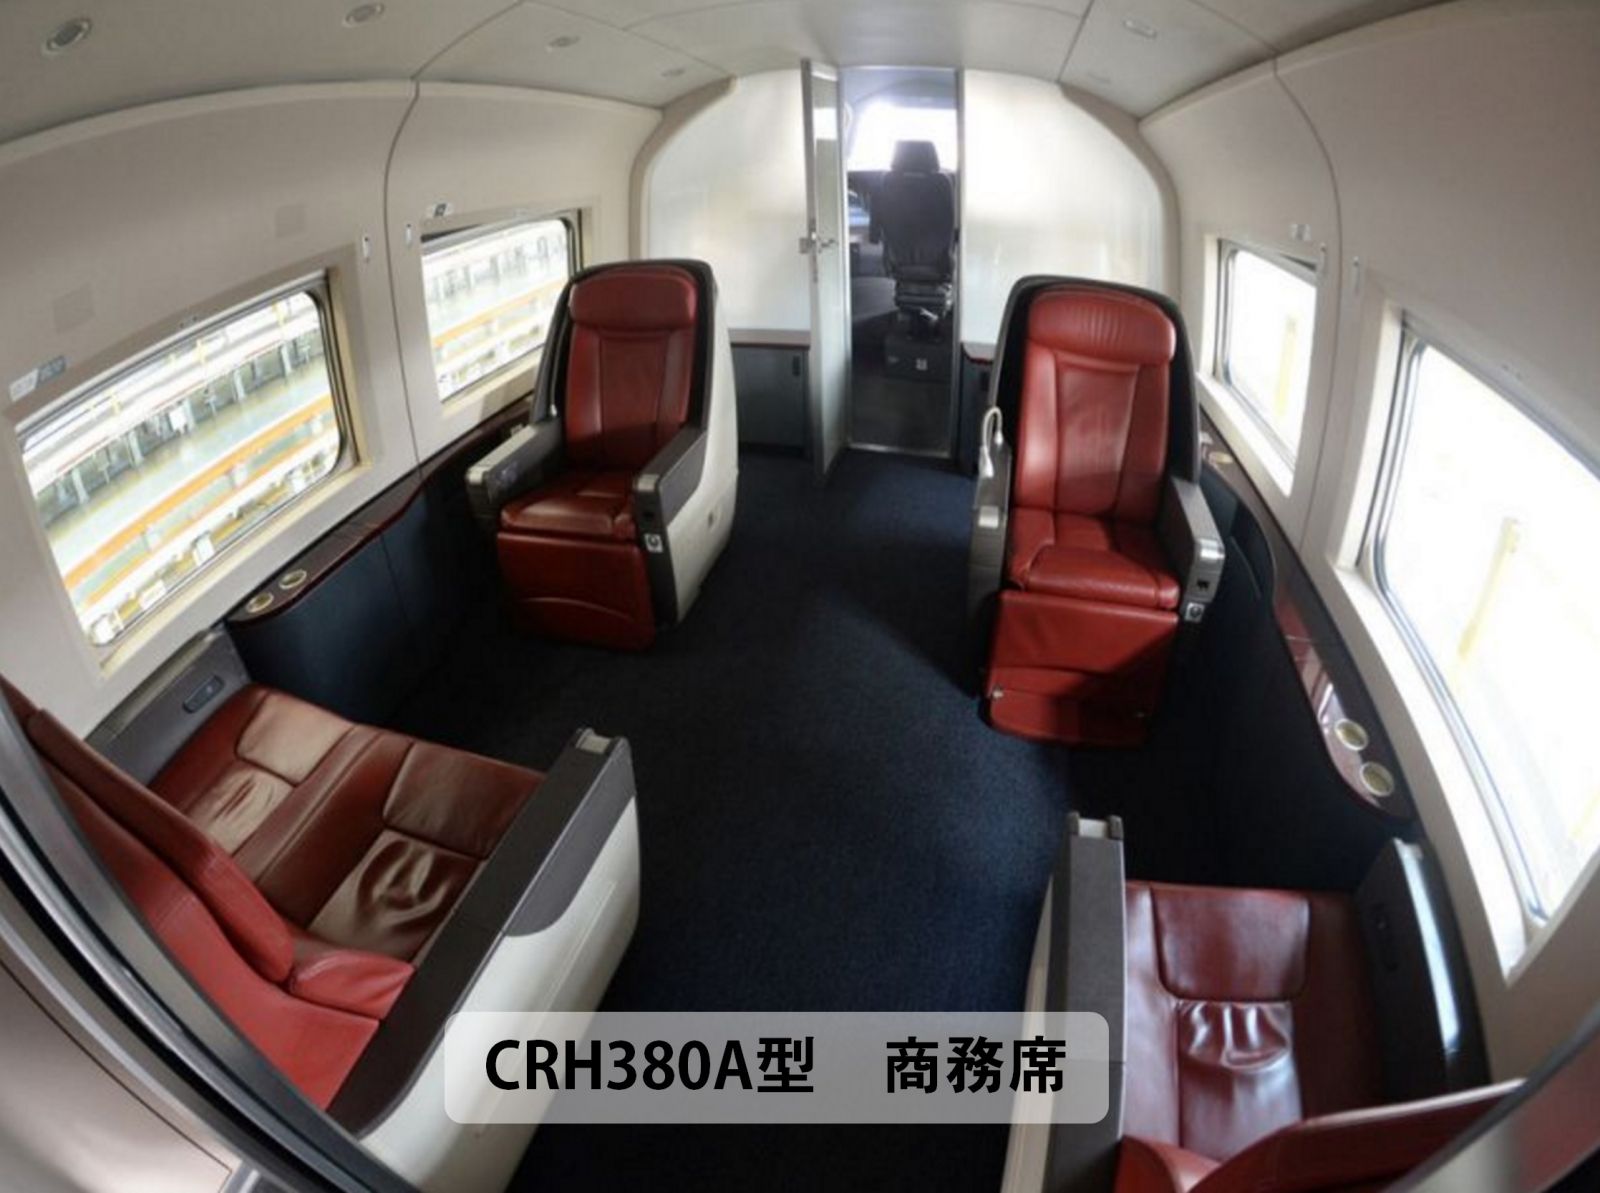 中国高速鉄道CRH380B型電車